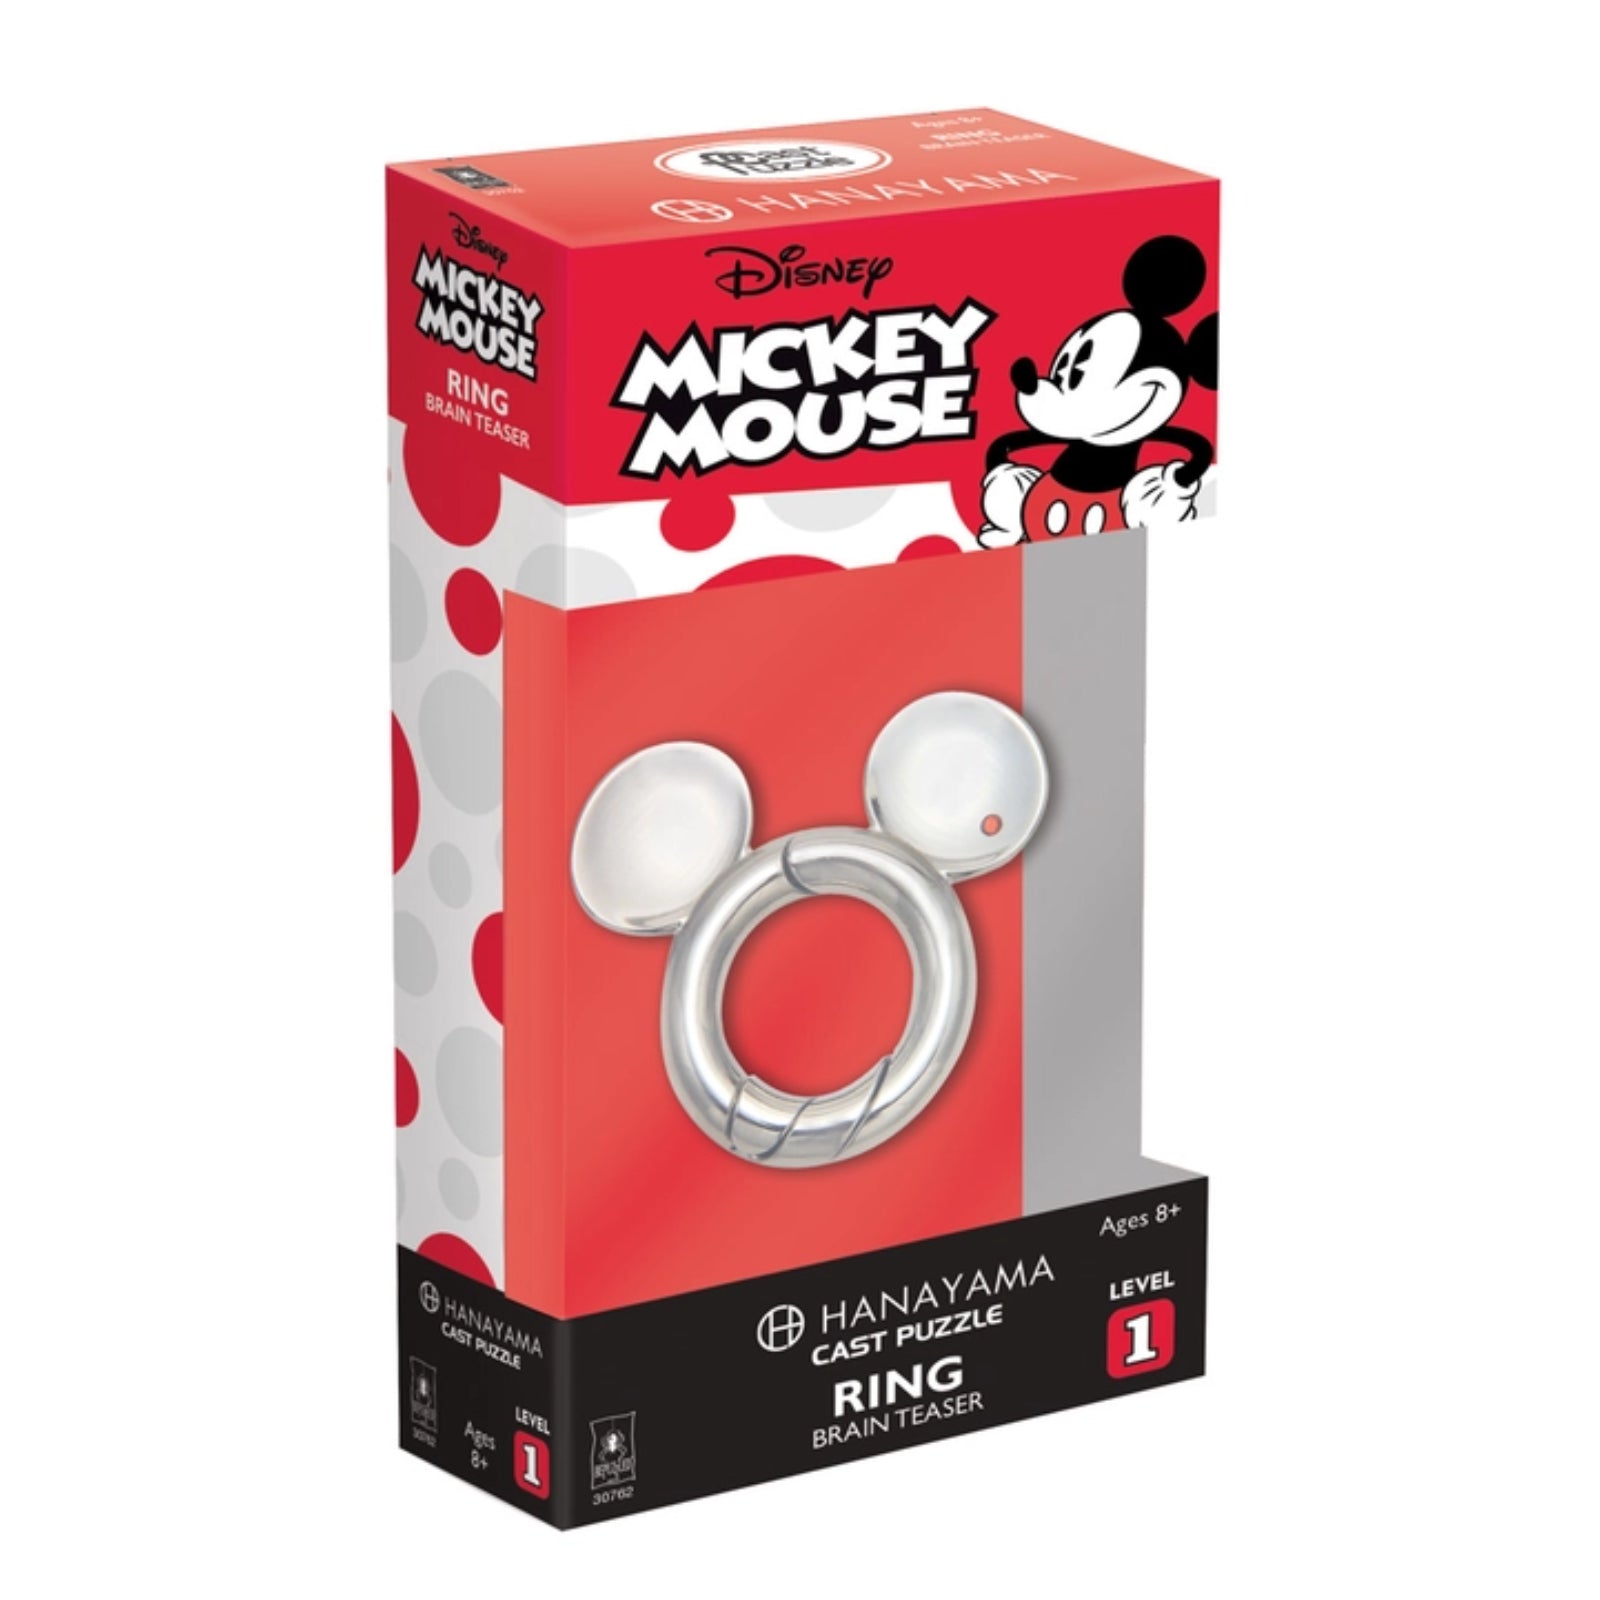 Mickey Mouse Ring - Level 1 - Hanayama Cast Puzzle